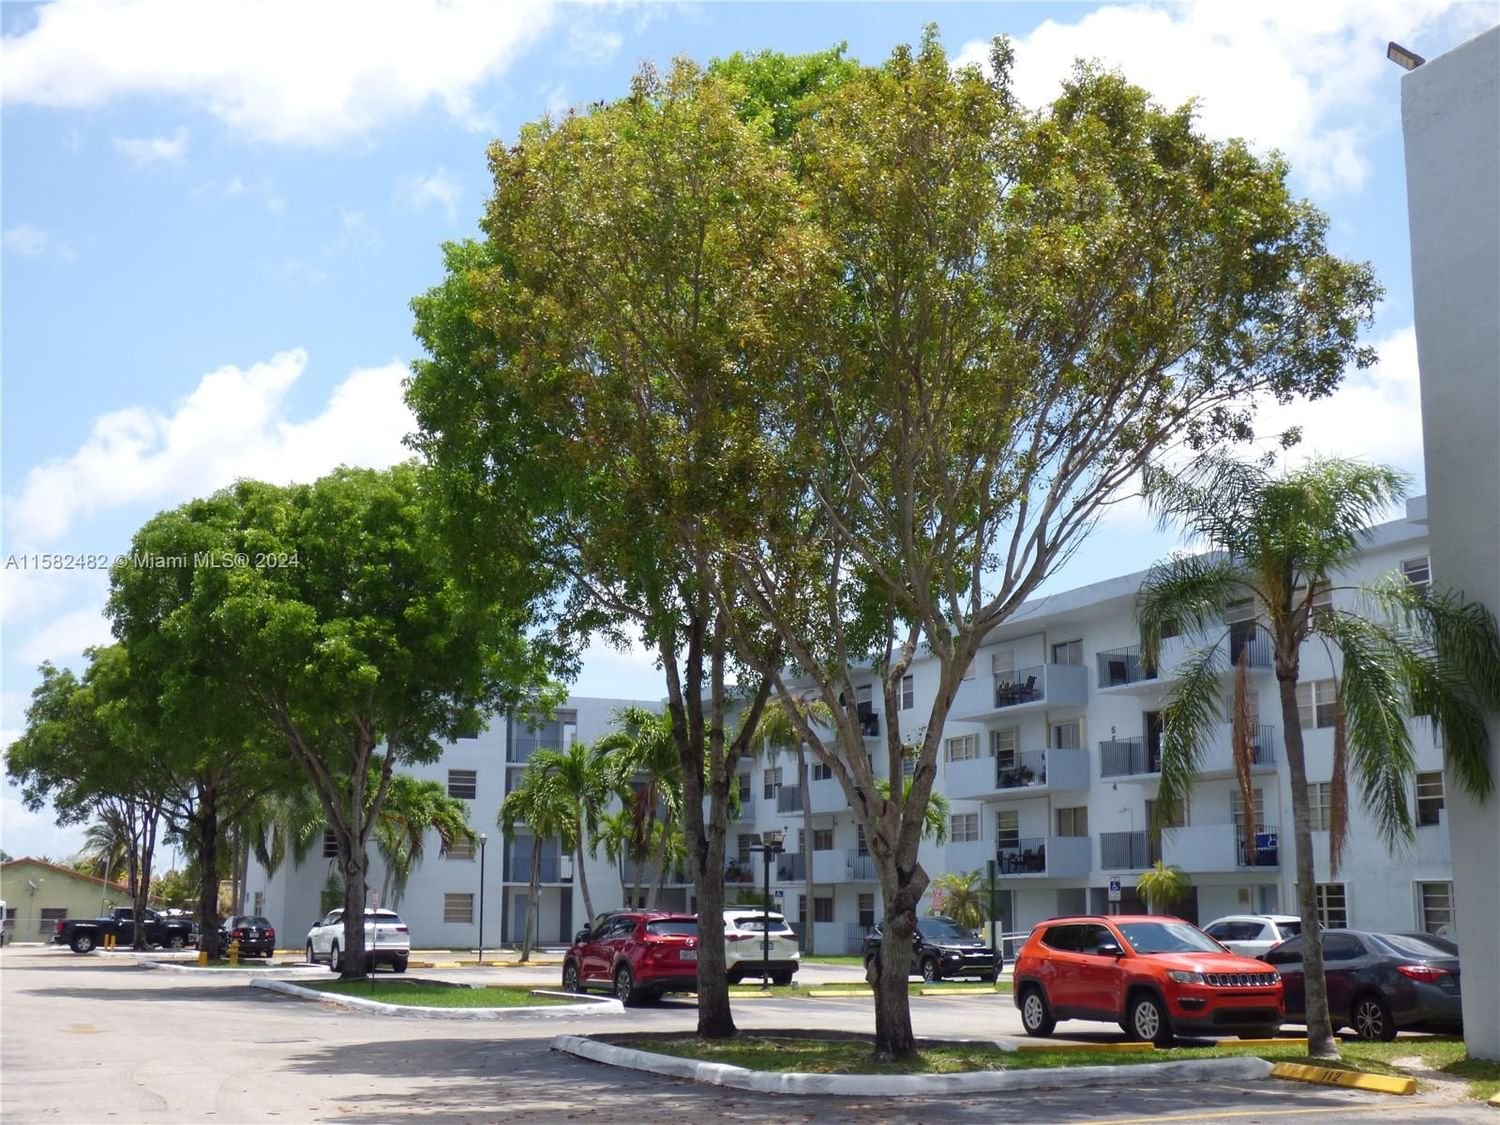 Real estate property located at 1221 122nd Ave #217, Miami-Dade County, SEGOVIA CONDO, Miami, FL